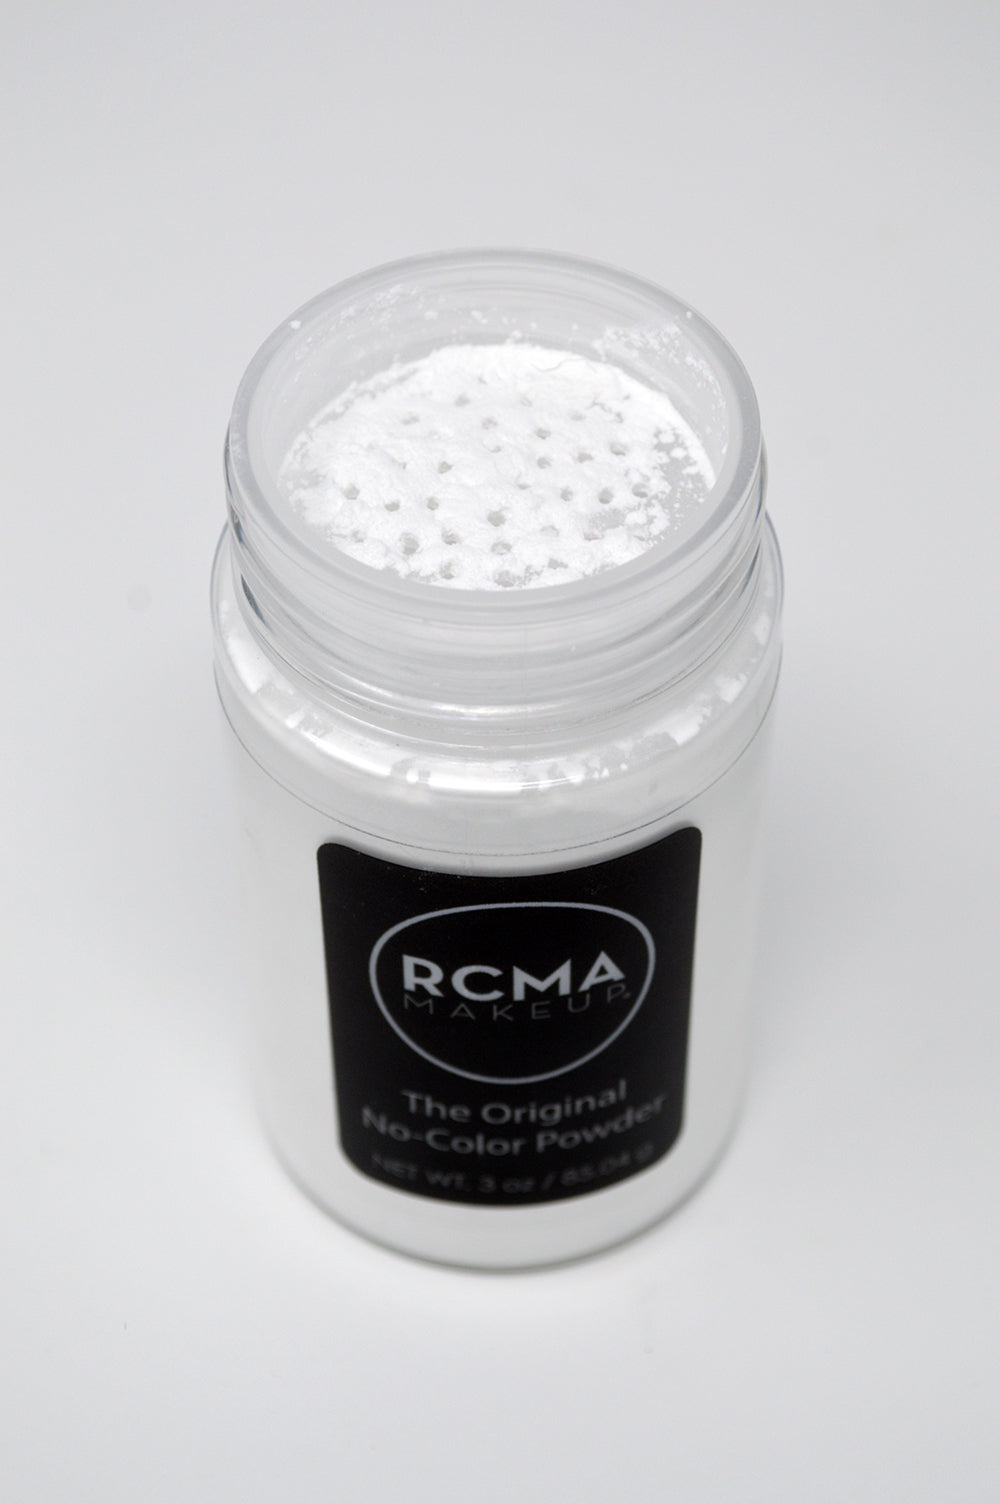 RCMA The Original No Colour Setting Powder Review – RachNevs